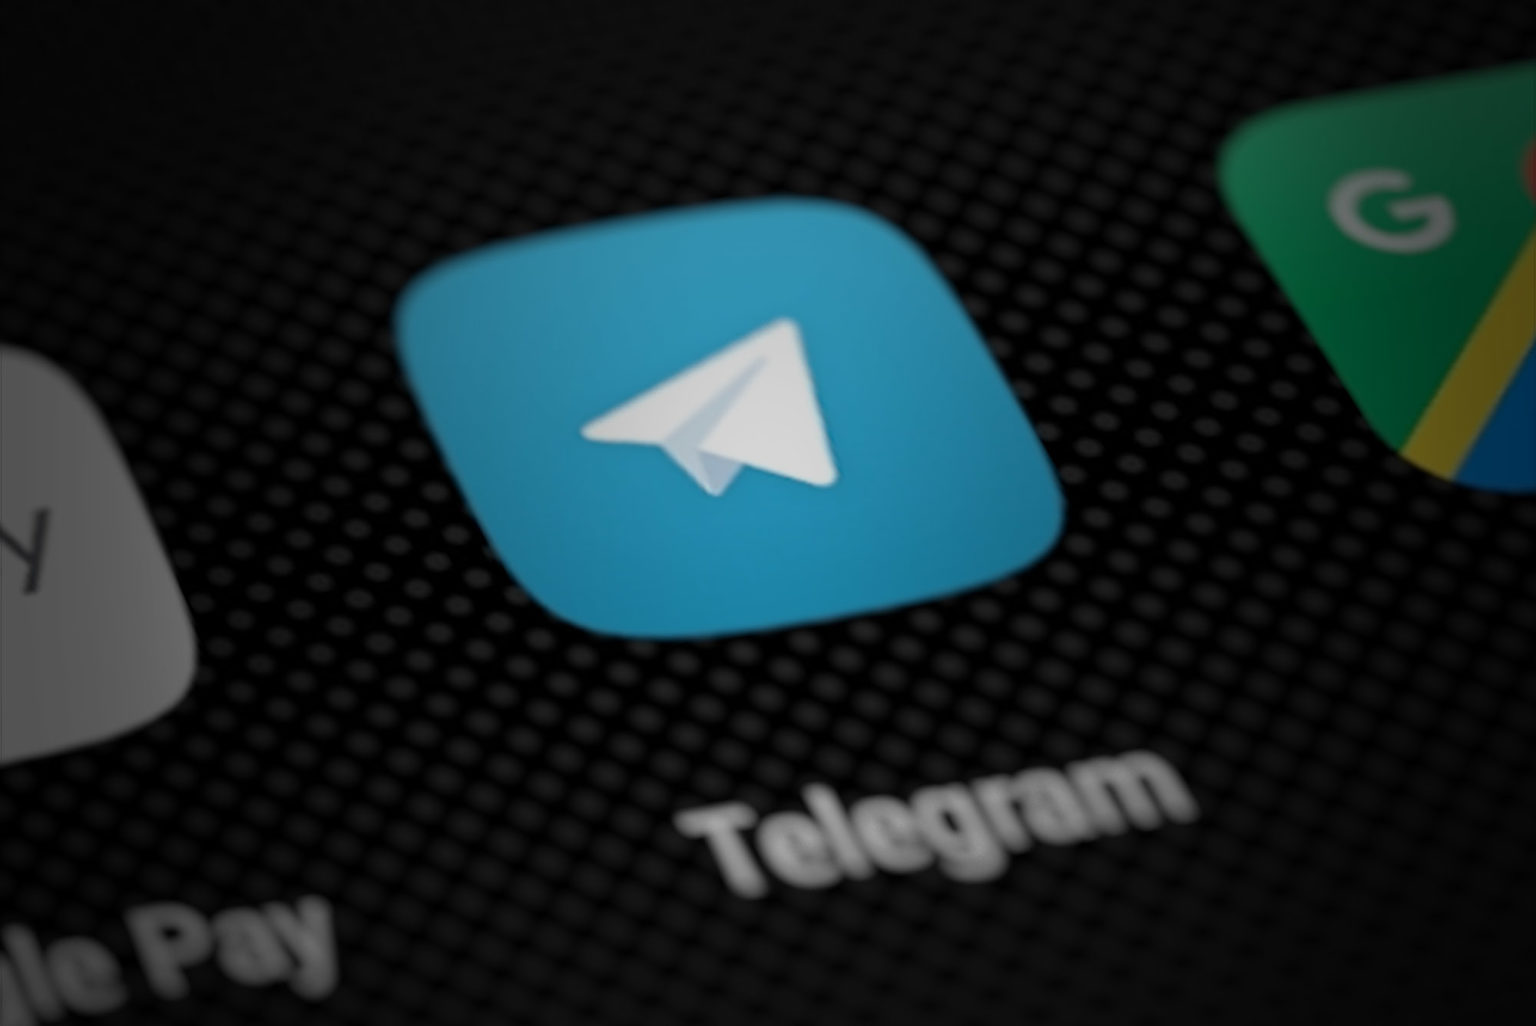 Телеграмм установить на телефон на русском языке для андроид бесплатно без рекламы бесплатно фото 116